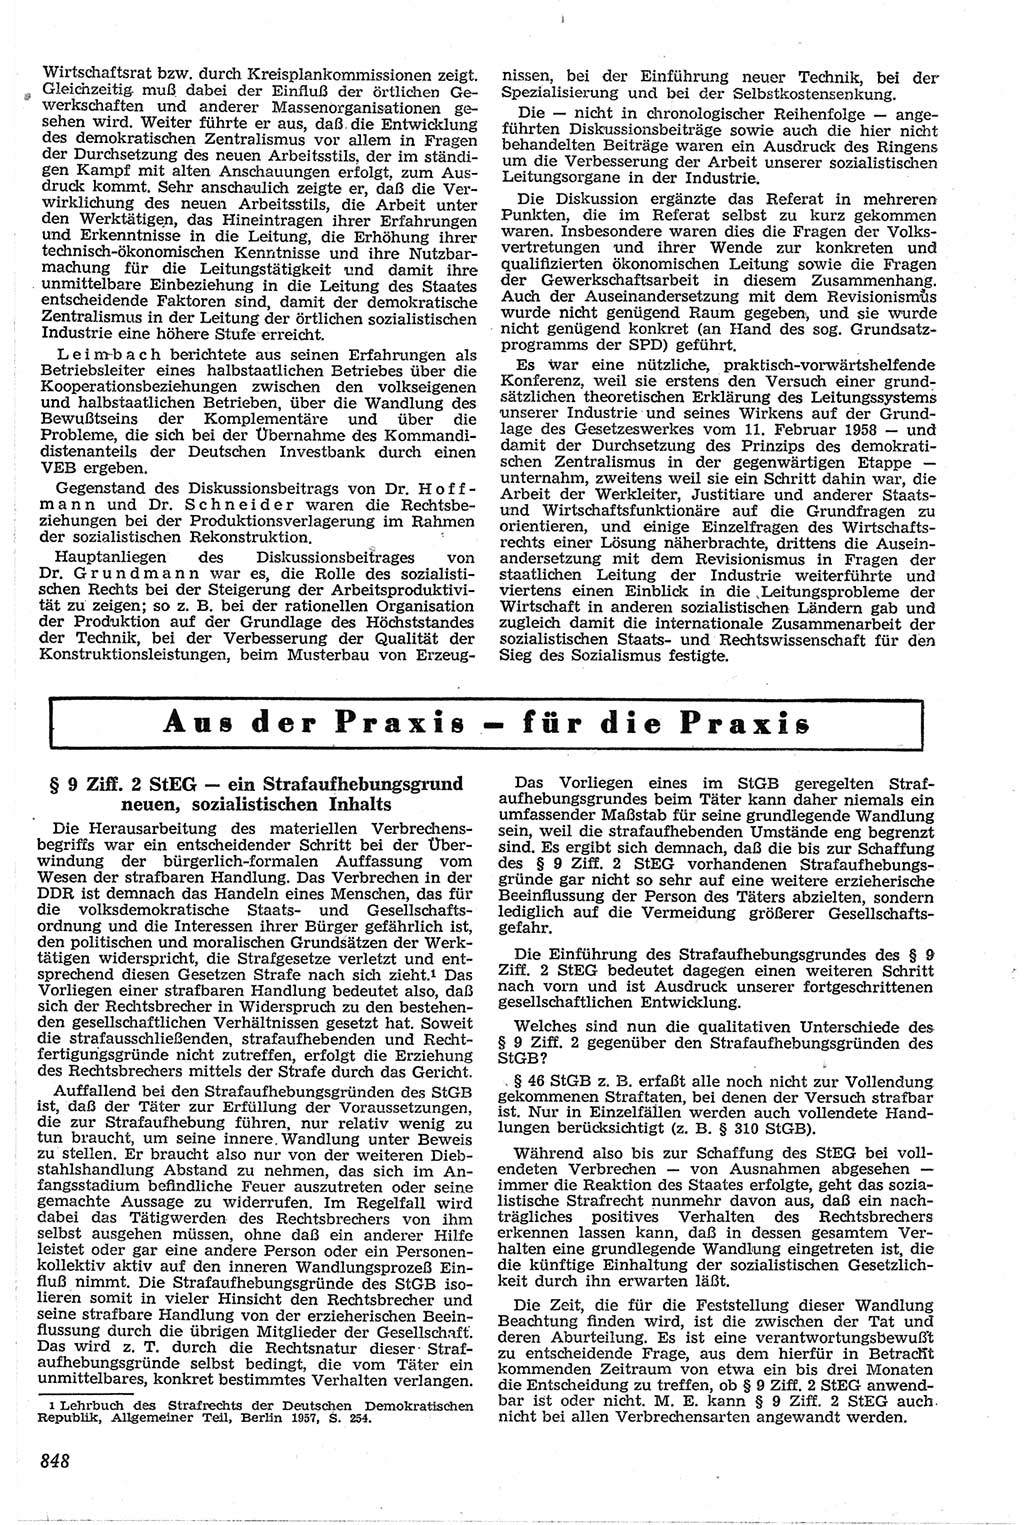 Neue Justiz (NJ), Zeitschrift für Recht und Rechtswissenschaft [Deutsche Demokratische Republik (DDR)], 13. Jahrgang 1959, Seite 848 (NJ DDR 1959, S. 848)